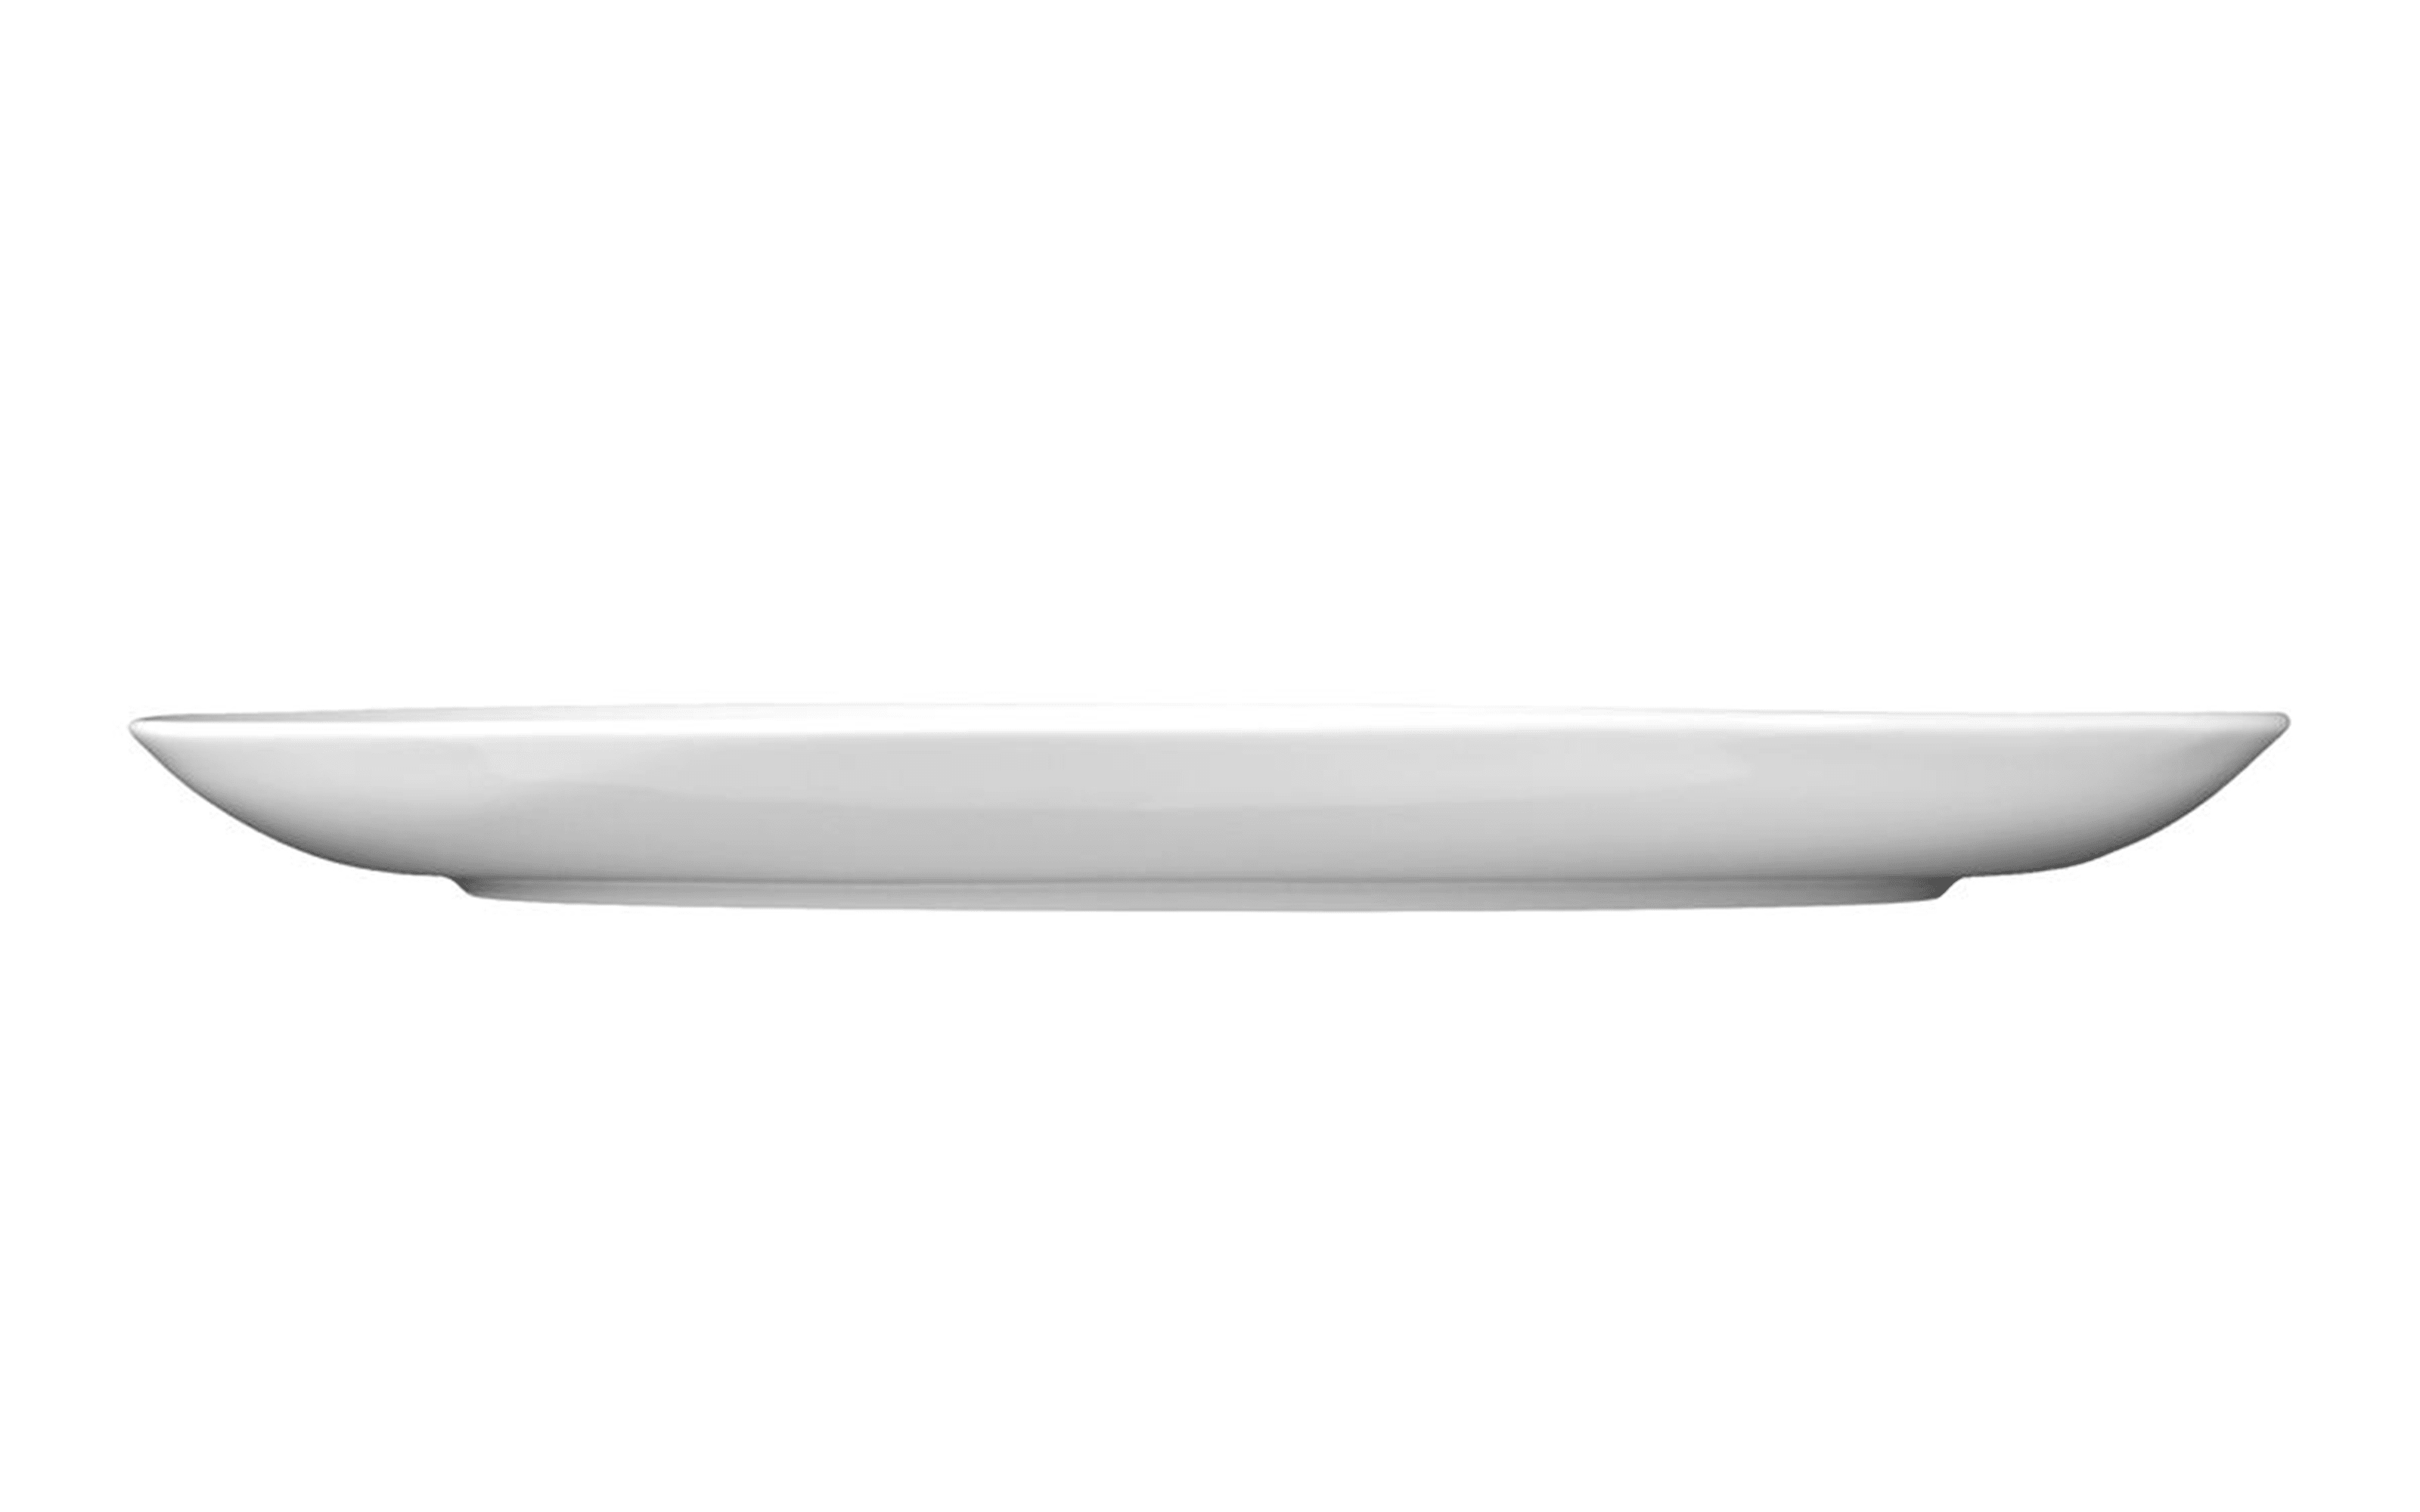 Servierplatte Rondo Liane in weiß, 28 cm